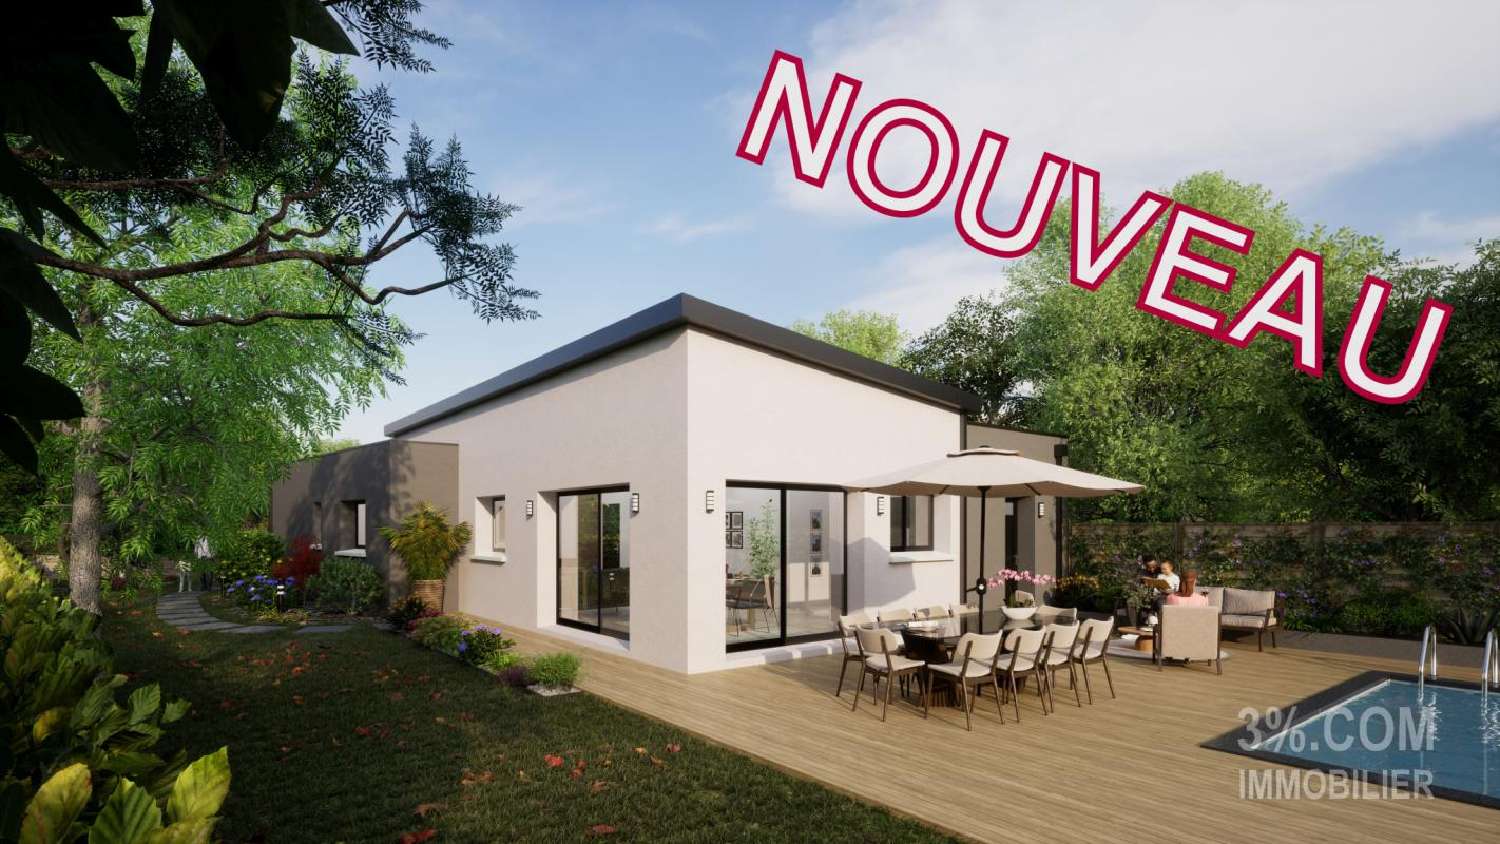  for sale house Savenay Loire-Atlantique 1